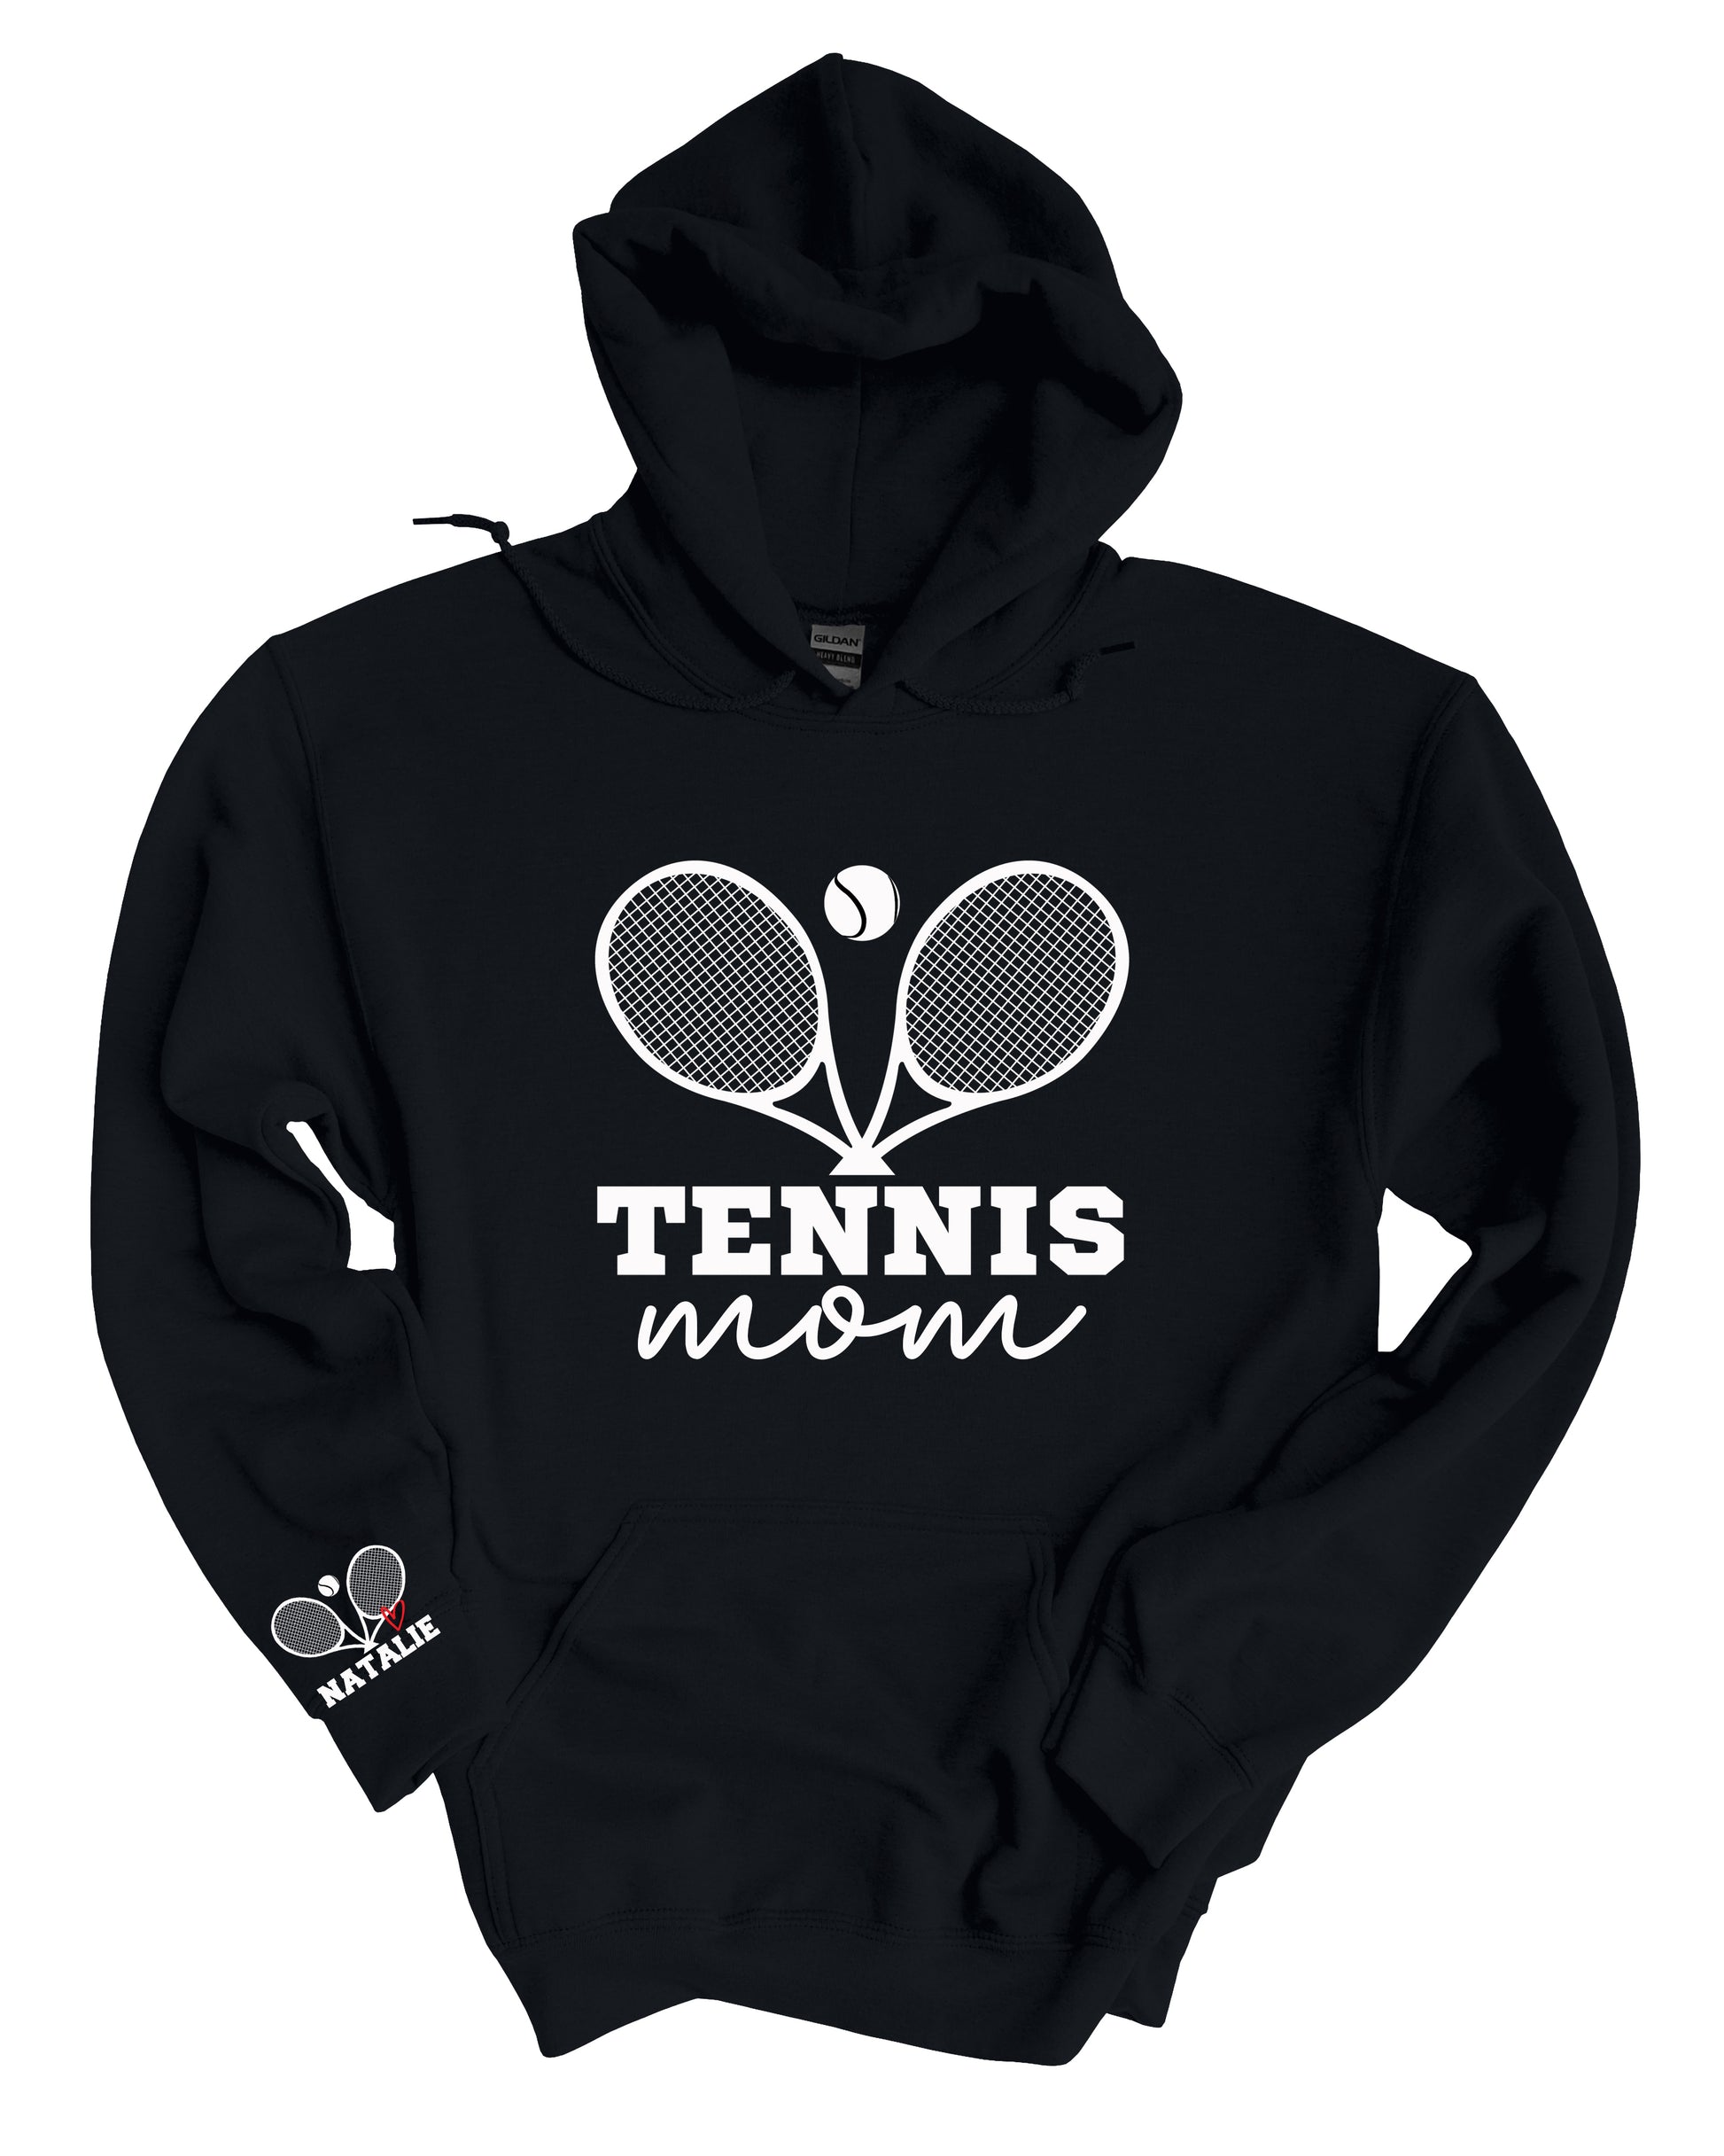 Tennis Mom Name on Sleeve Sweatshirt, T-Shirt, or Hoodie